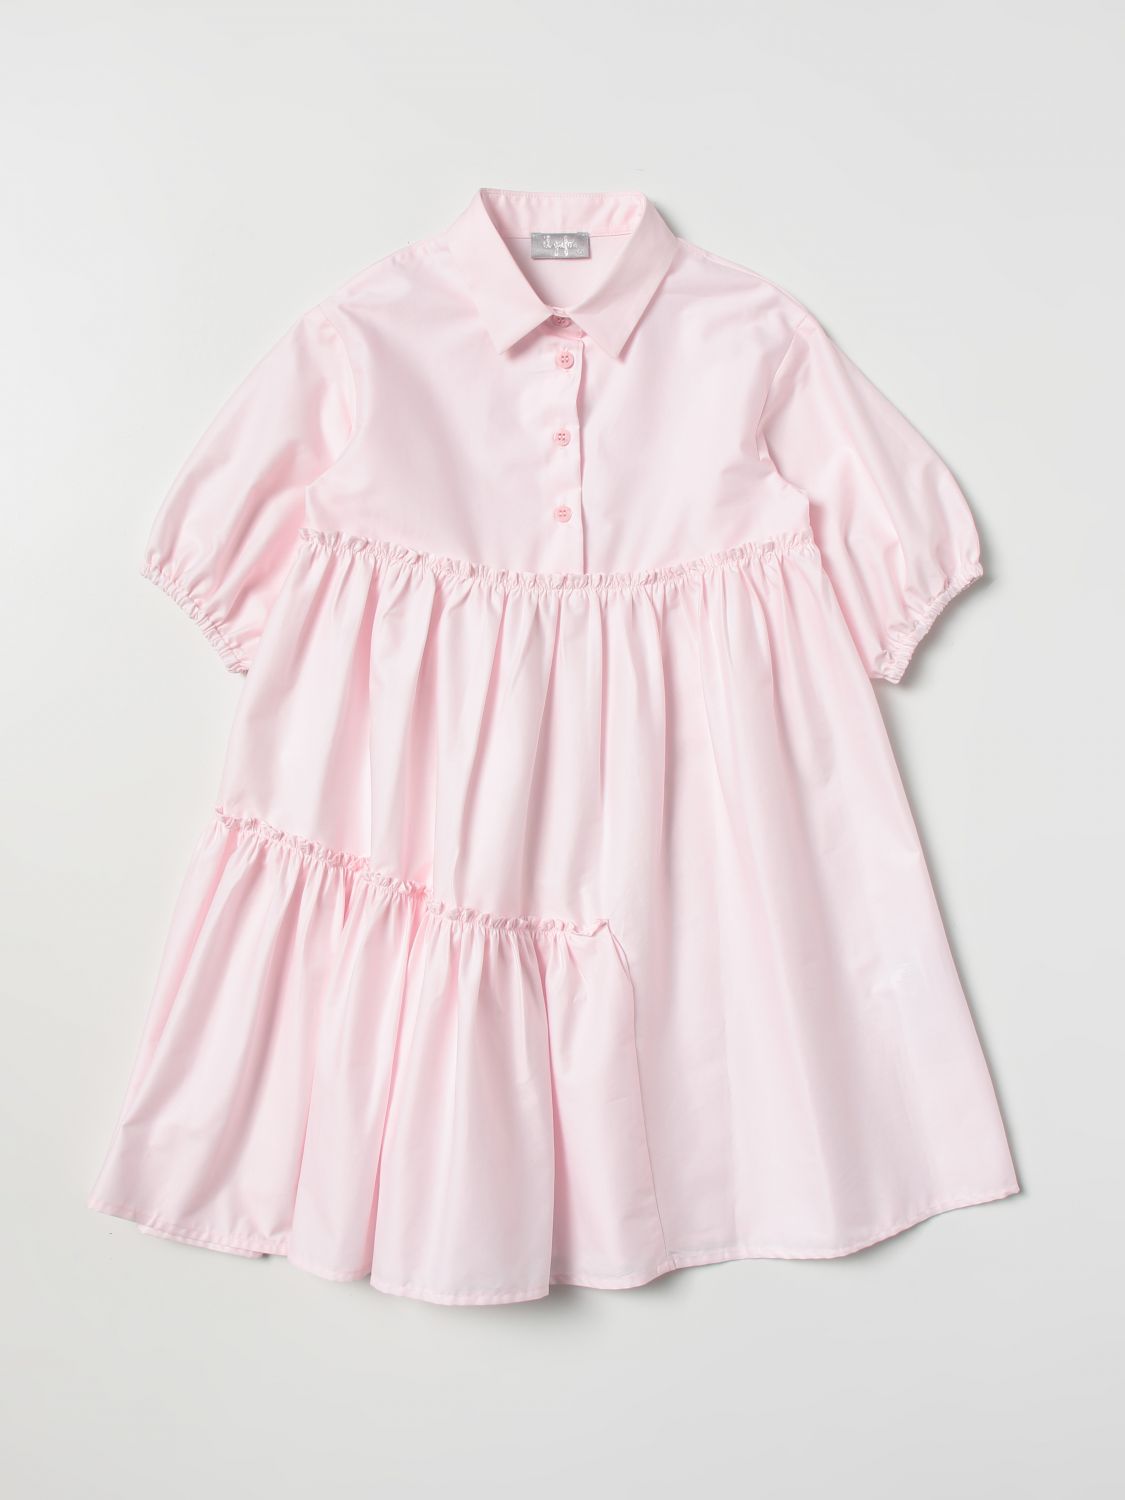 Kleid Il Gufo: Il Gufo Mädchen Kleid pink 1